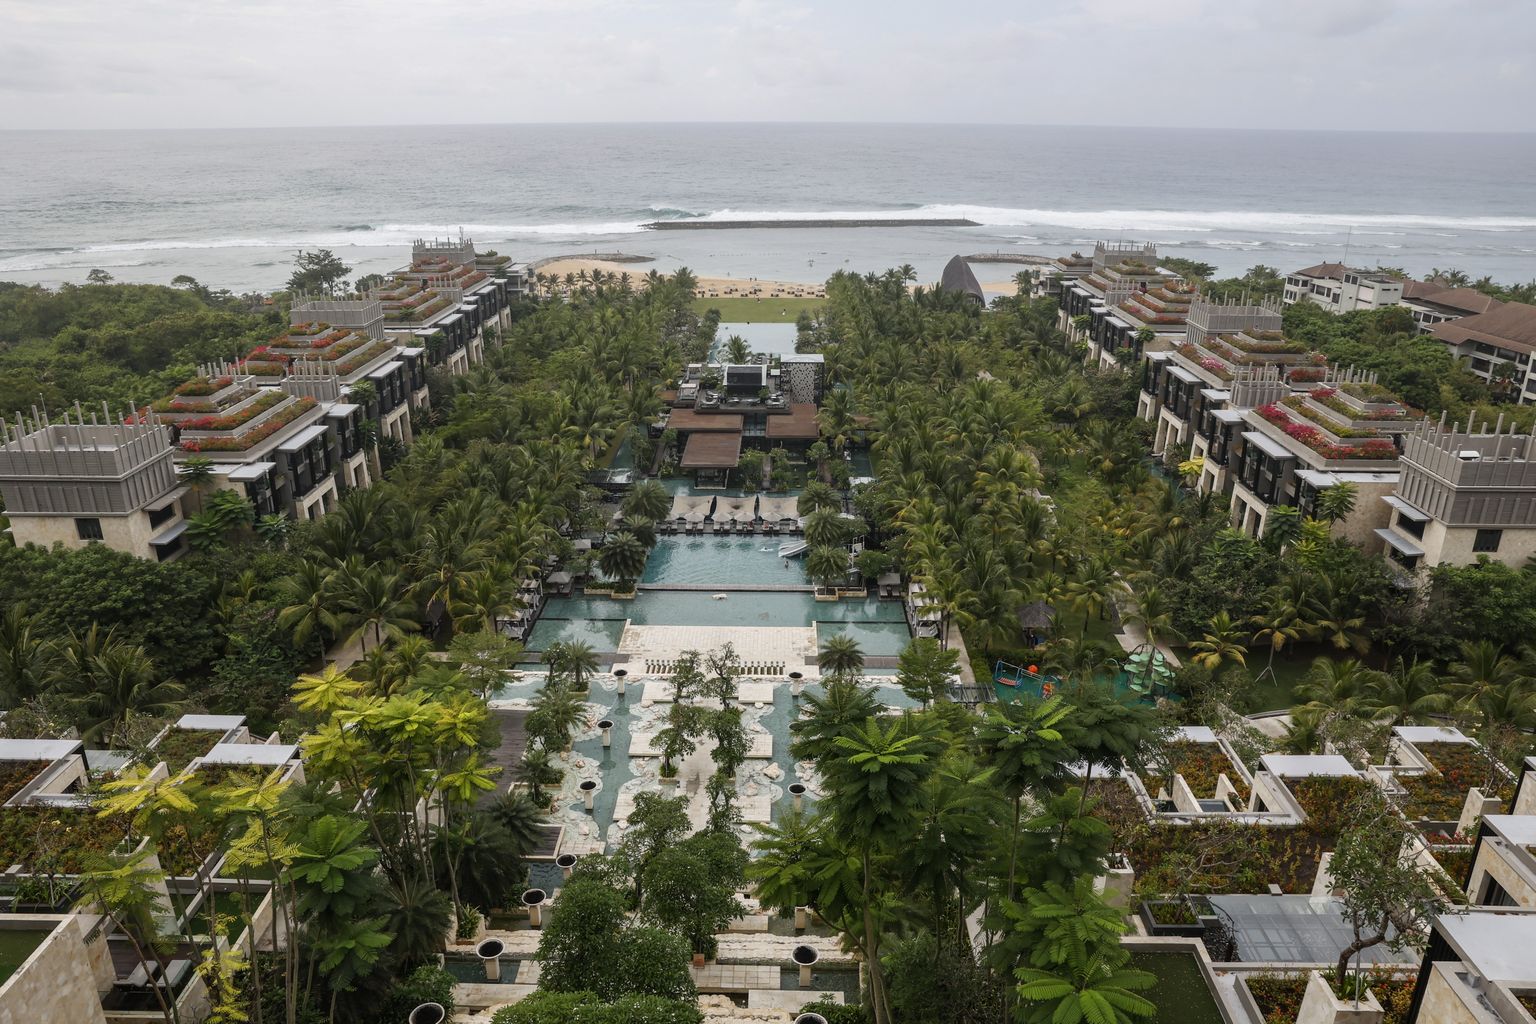 Apurva Kempinsky hotell Bali saarel, kus novembris peetakse G20 tippkohtumine.